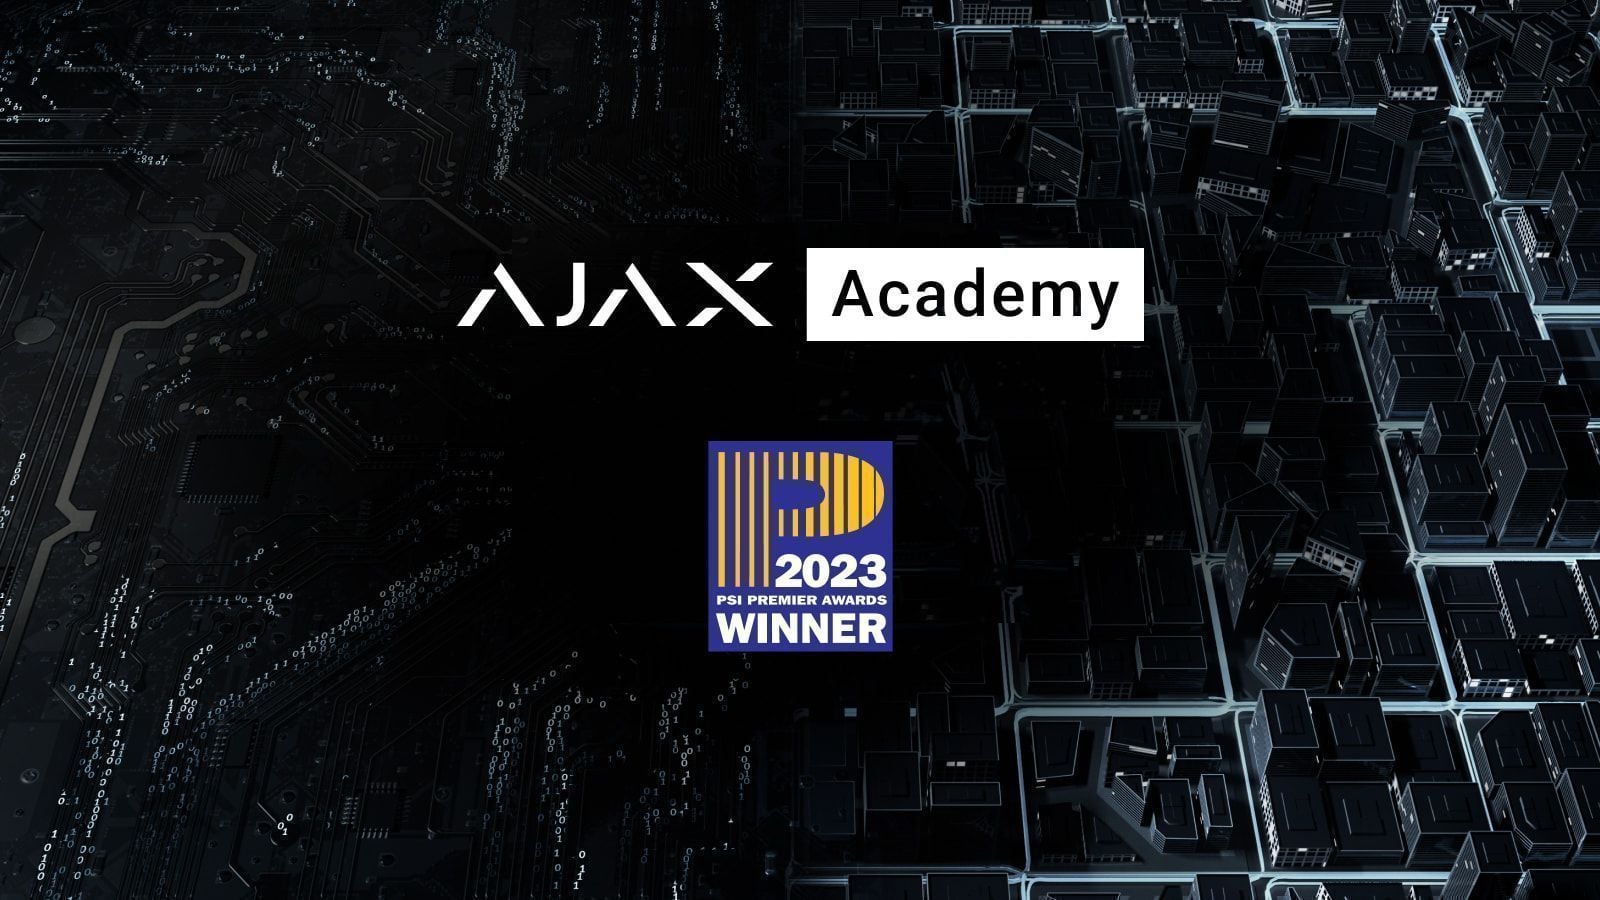 Ajax Academy wint PSI Premier Awards 2023 als fabrikant-trainingsprogramma van het jaar